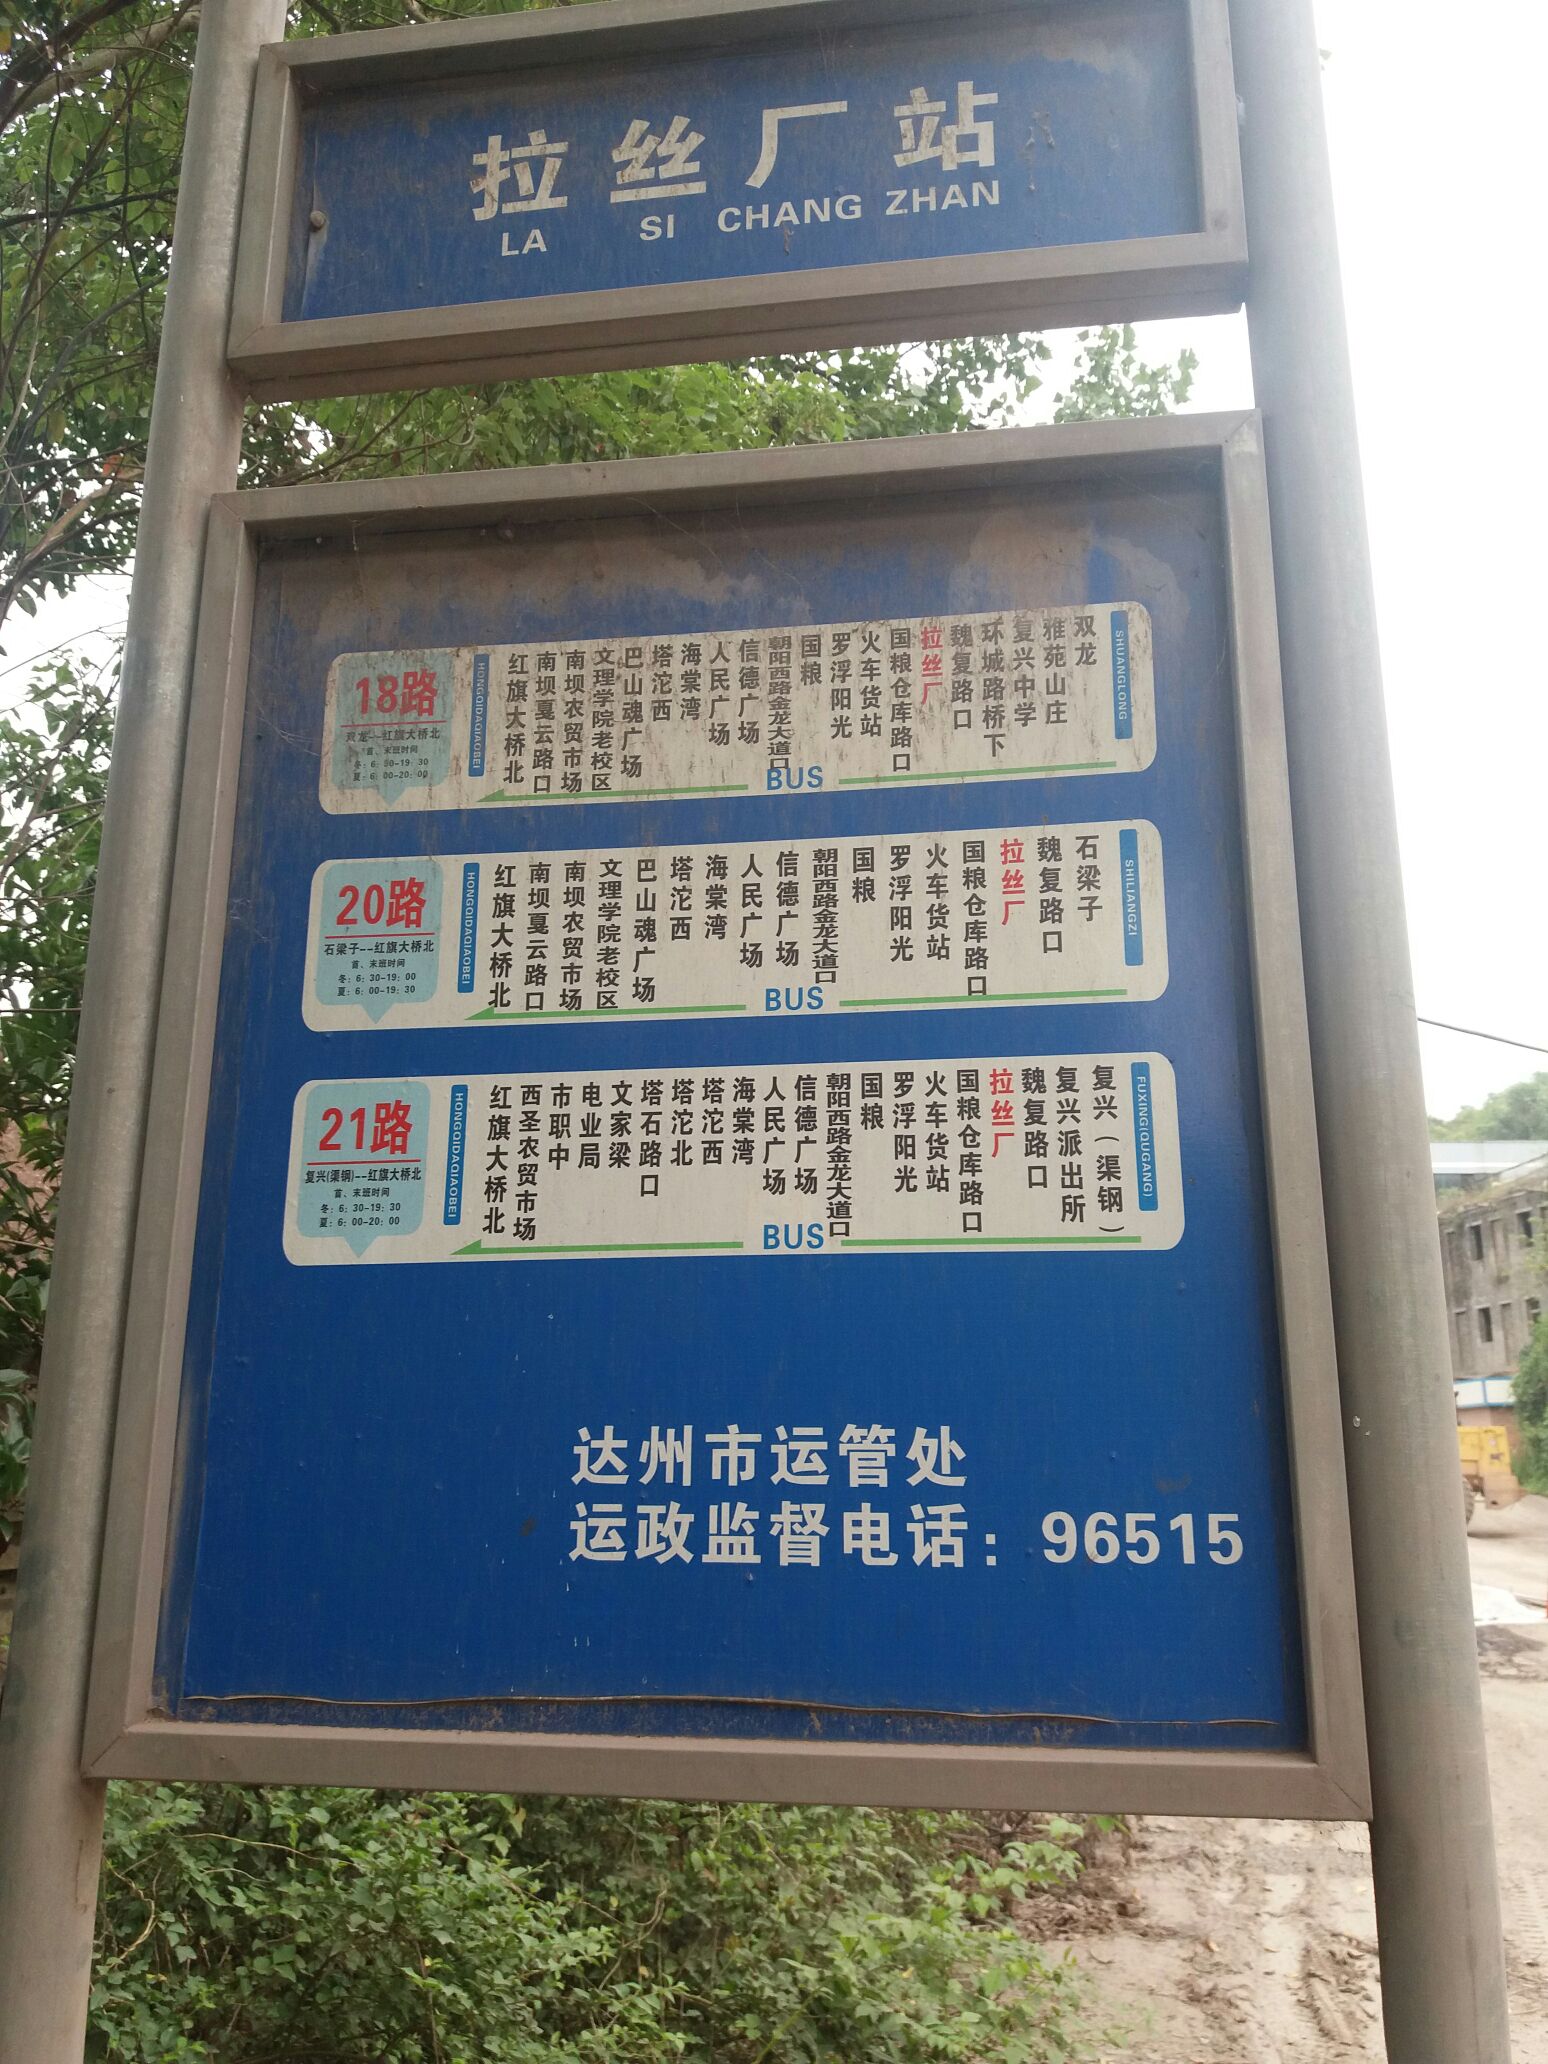 公交站牌上的标志图片